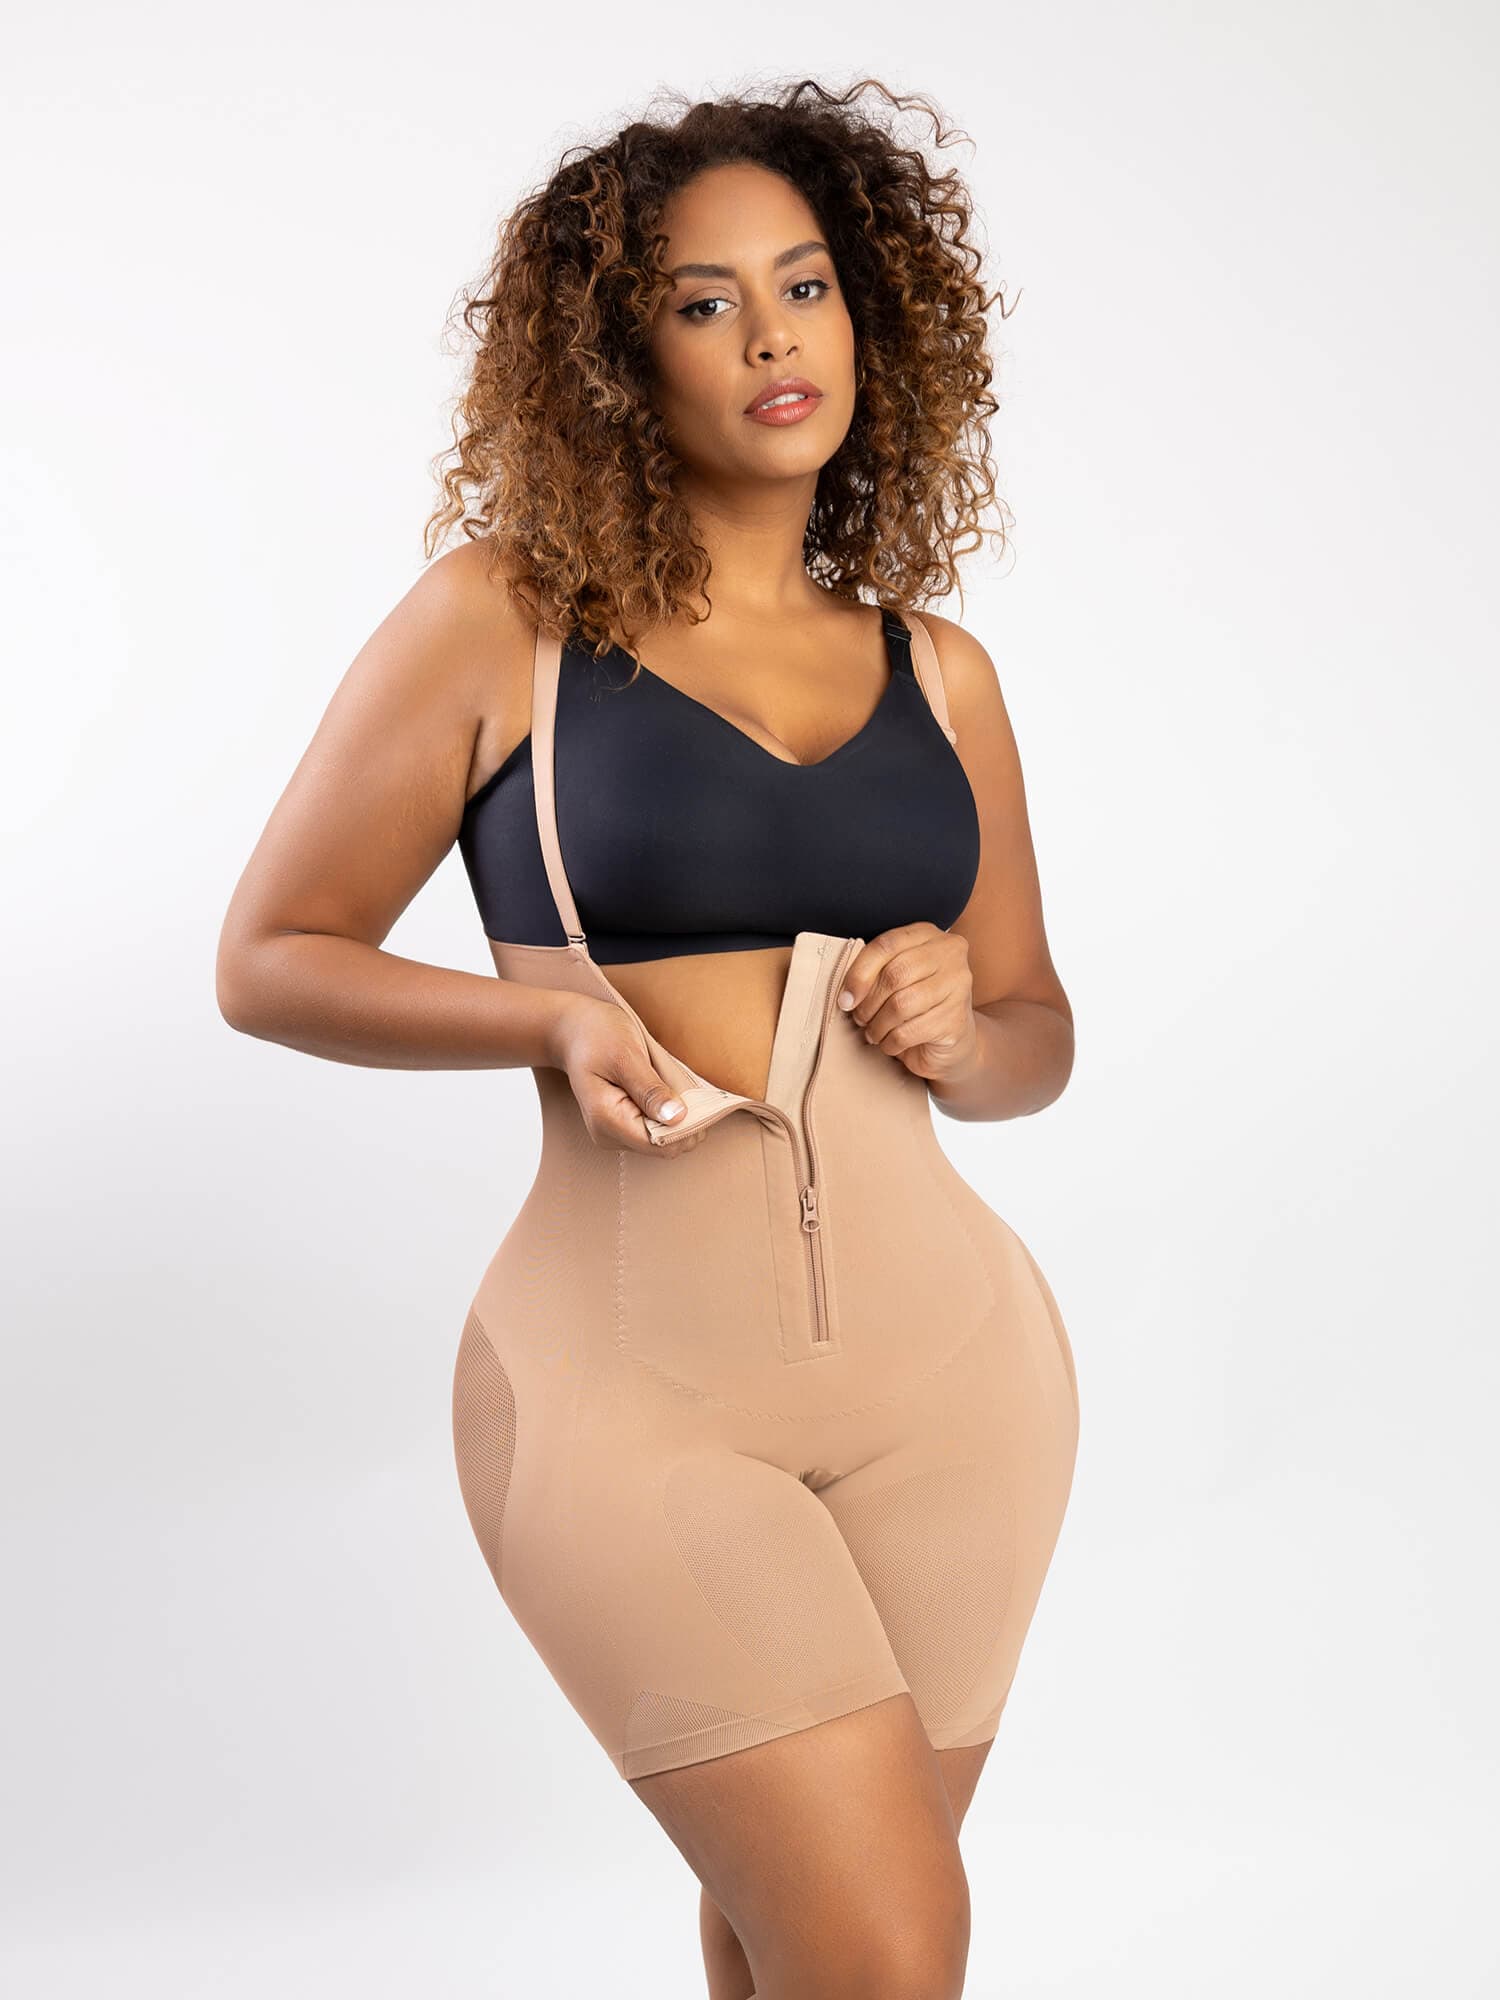 Womens Open Bust Body Shaper Plus Size Shapewear Tummy Control